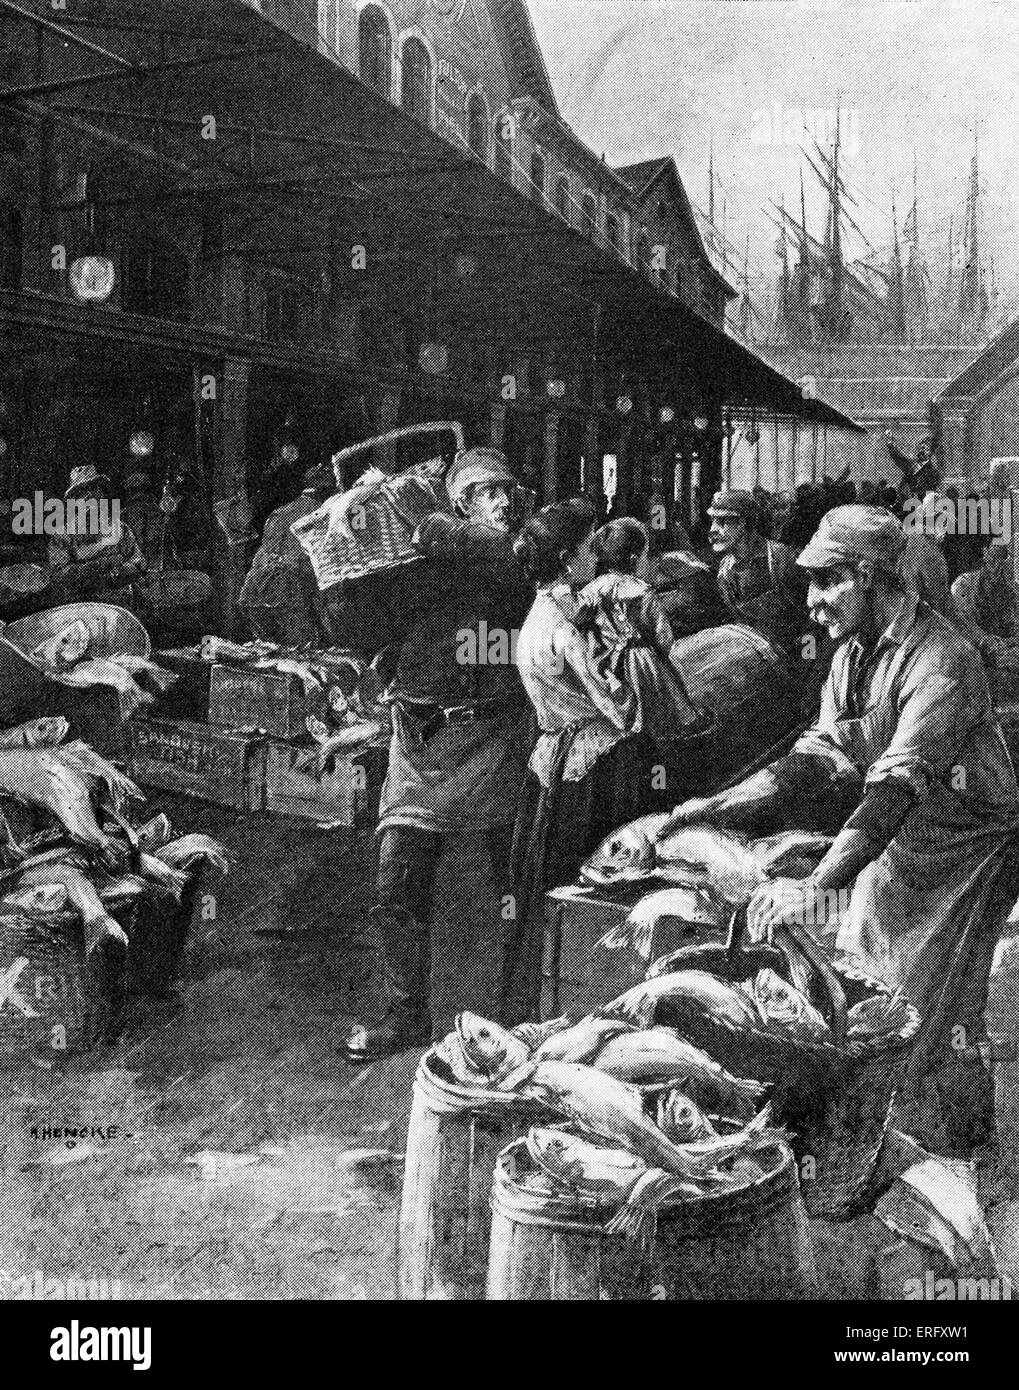 Alten Fulton Market, New York, ca. 1890 s. Abbildung zeigt einen Donnerstag Morgen auf dem Markt der Fulton Street market Männer Stockfoto